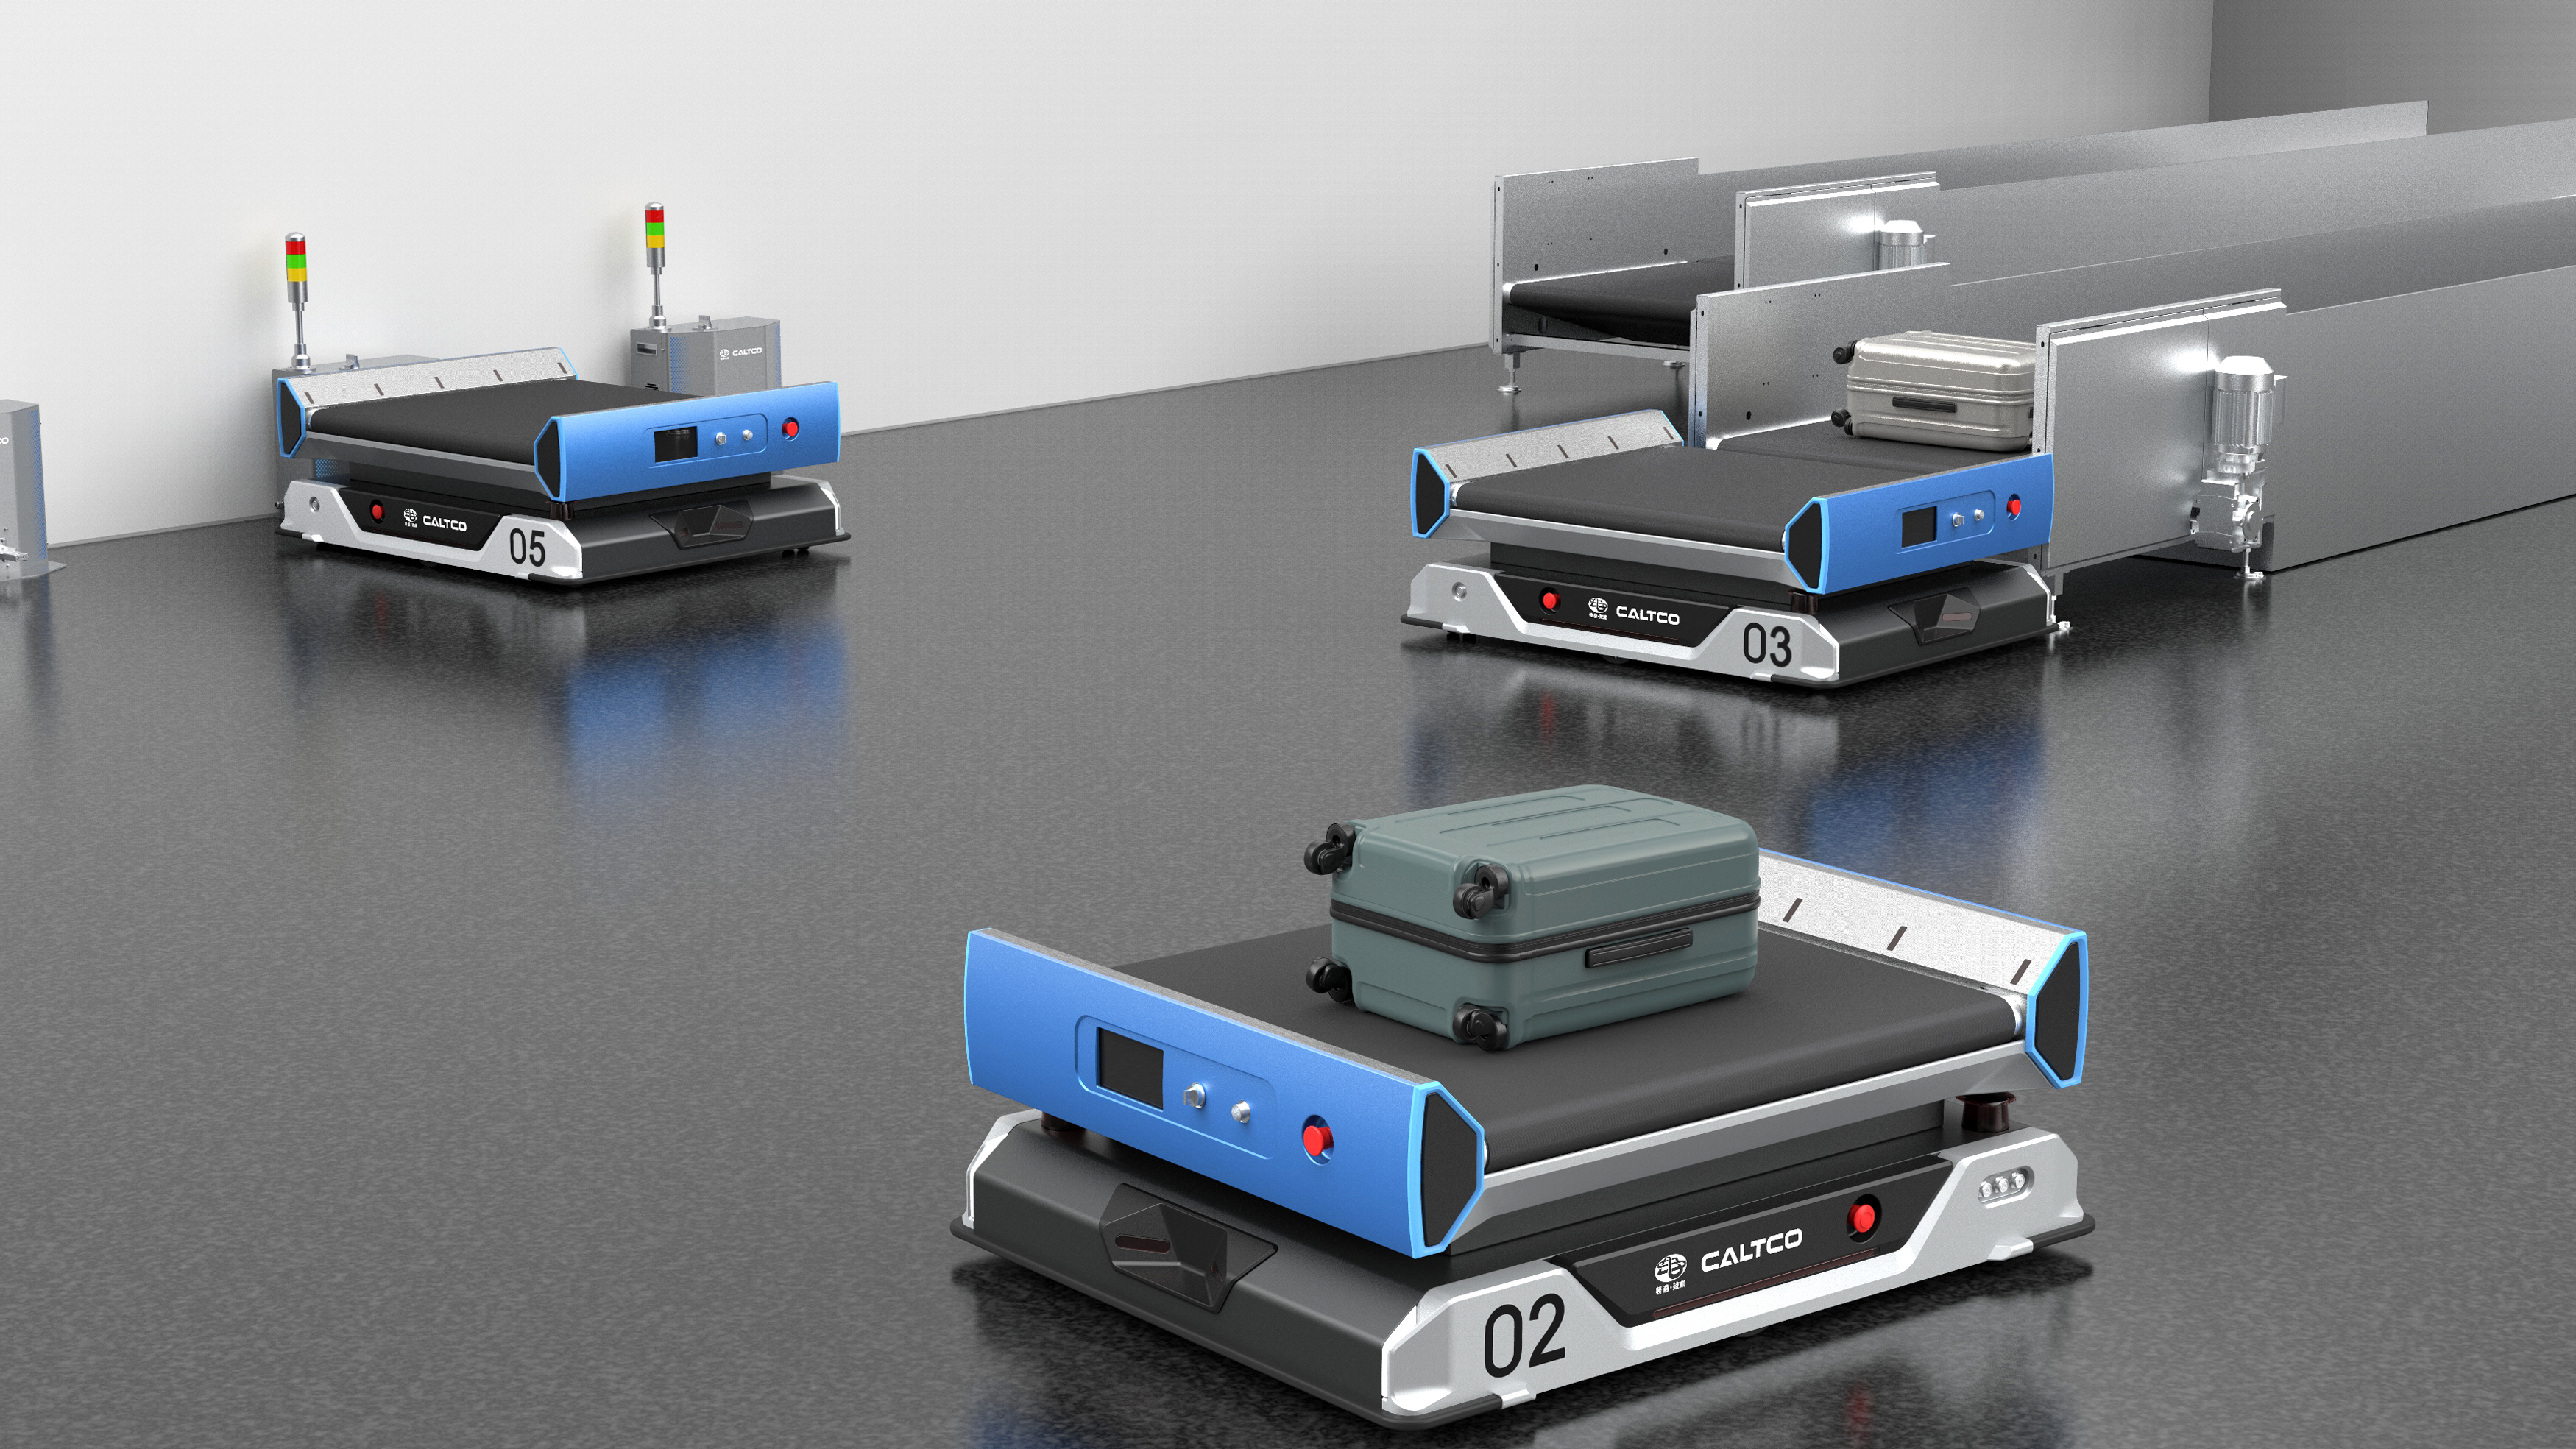 Autonomous Mobile Robot of Aviation Logistics